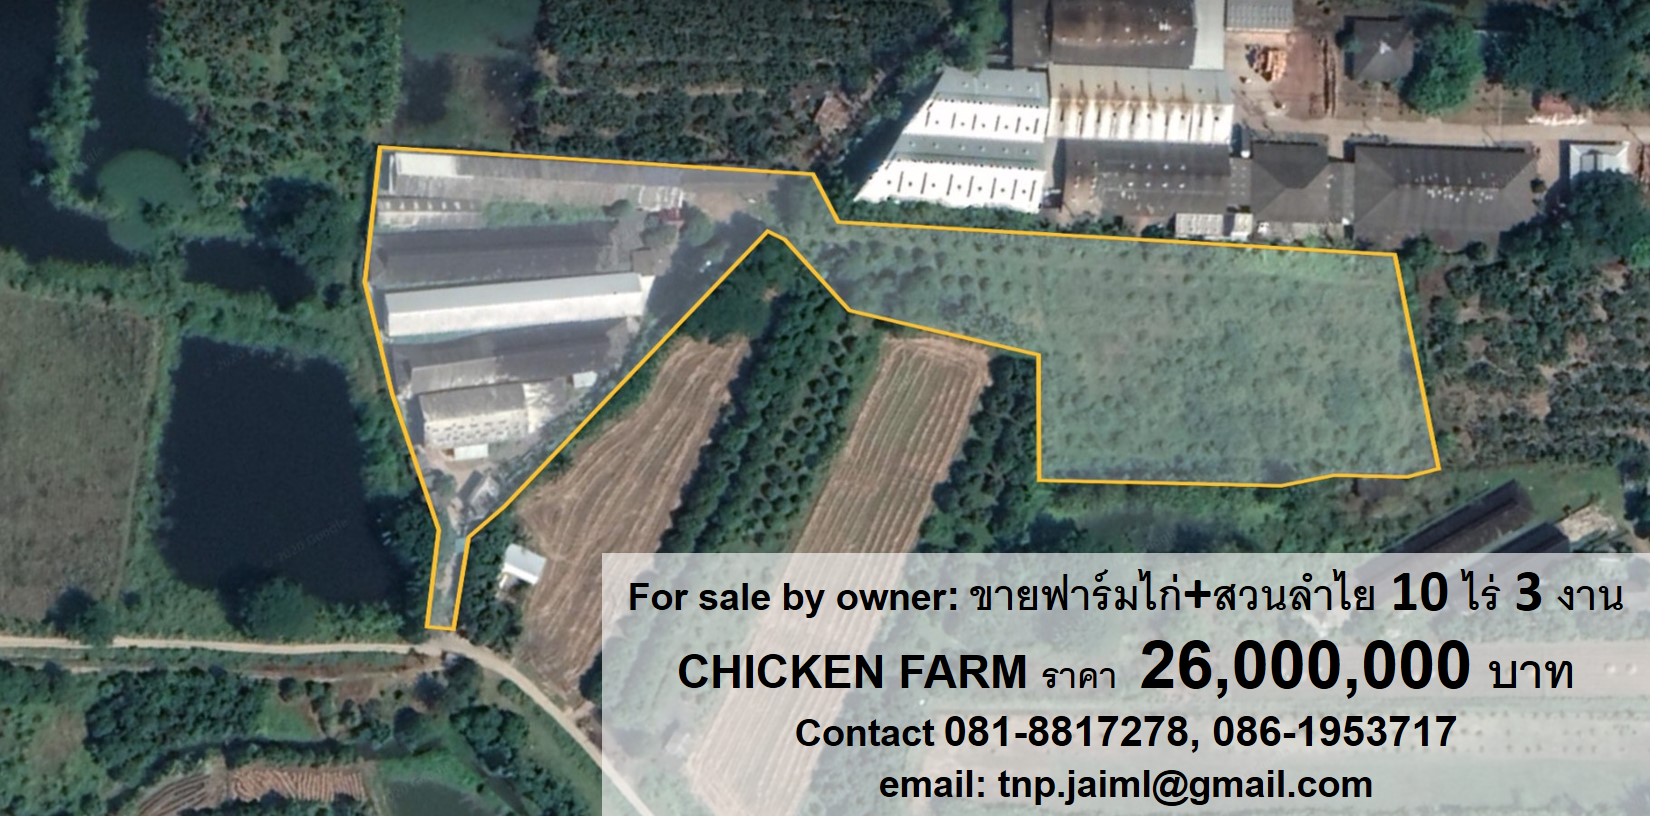 ภาพขายฟาร์มไก่ ตำบลบ้านกลาง อำเภอสันป่าตอง จังหวัด​เชียงใหม่ (POULTRY (CHICKEN) FARM FOR SALE by owner)